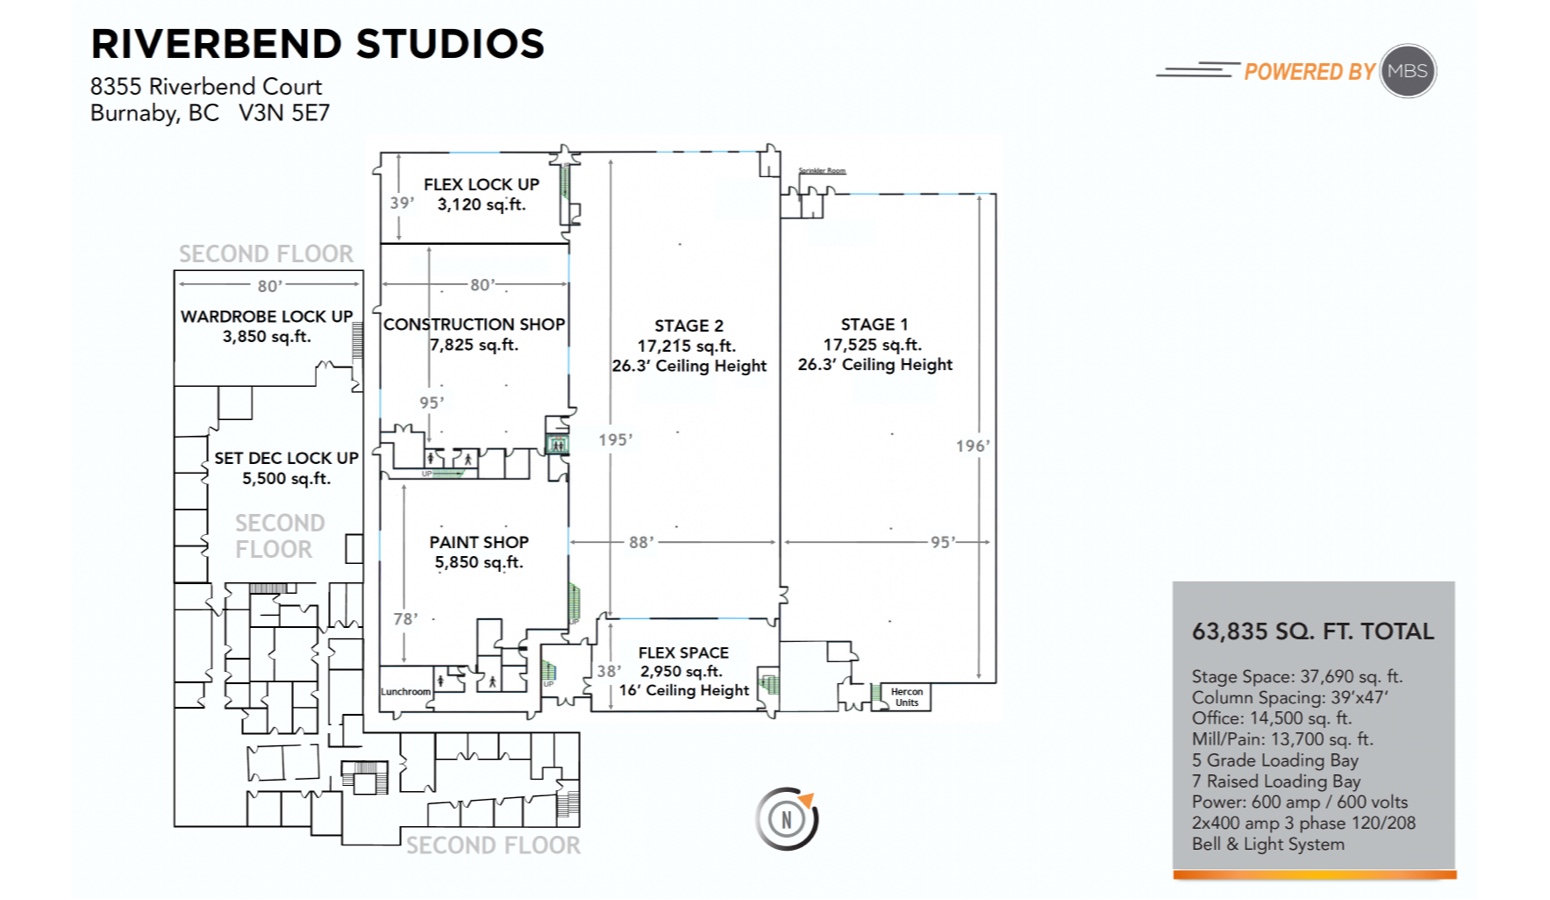 Riverbend Studios Floorplan - MBS Group